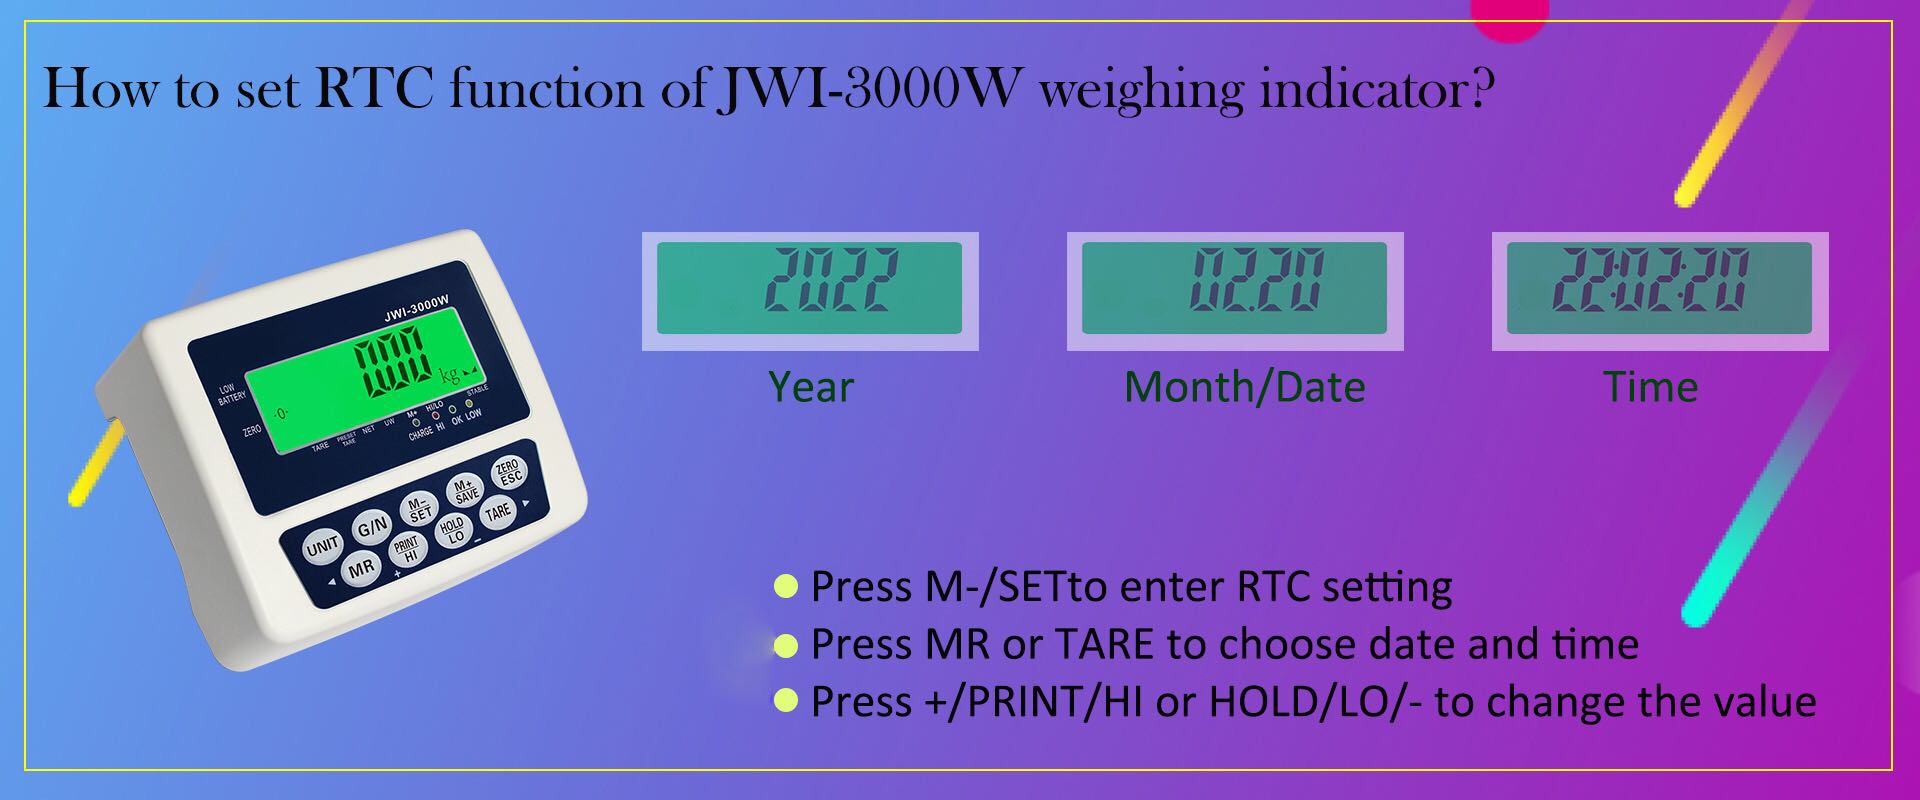 cách cài đặt chức năng RTC của chỉ thị cân công nghiệp JWI-3000W